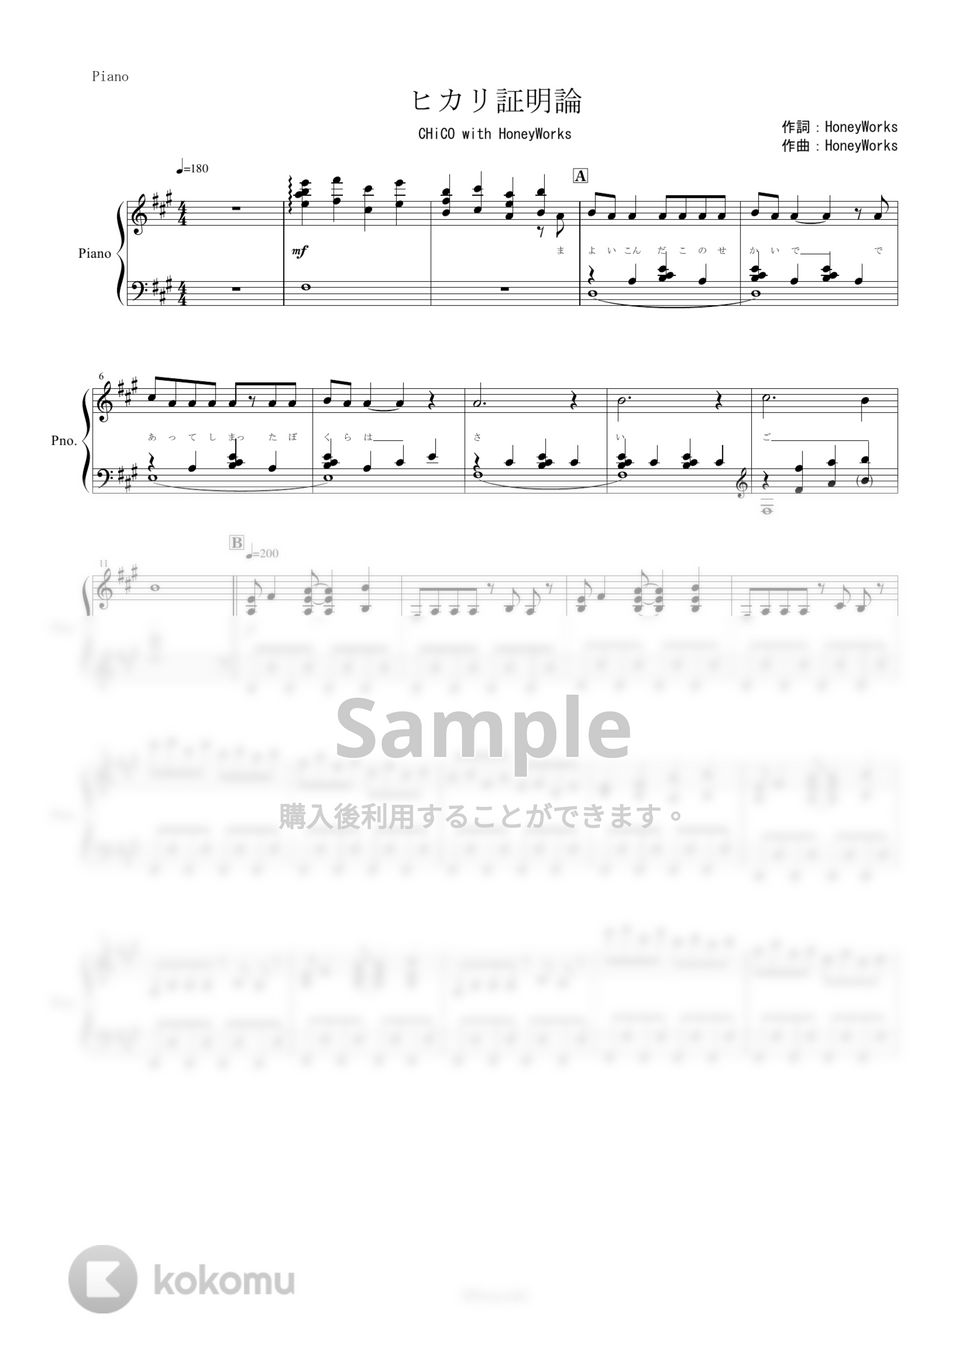 銀魂 - ヒカリ証明論 (CHiCO with HoneyWorks/ピアノ楽譜) by yoshi